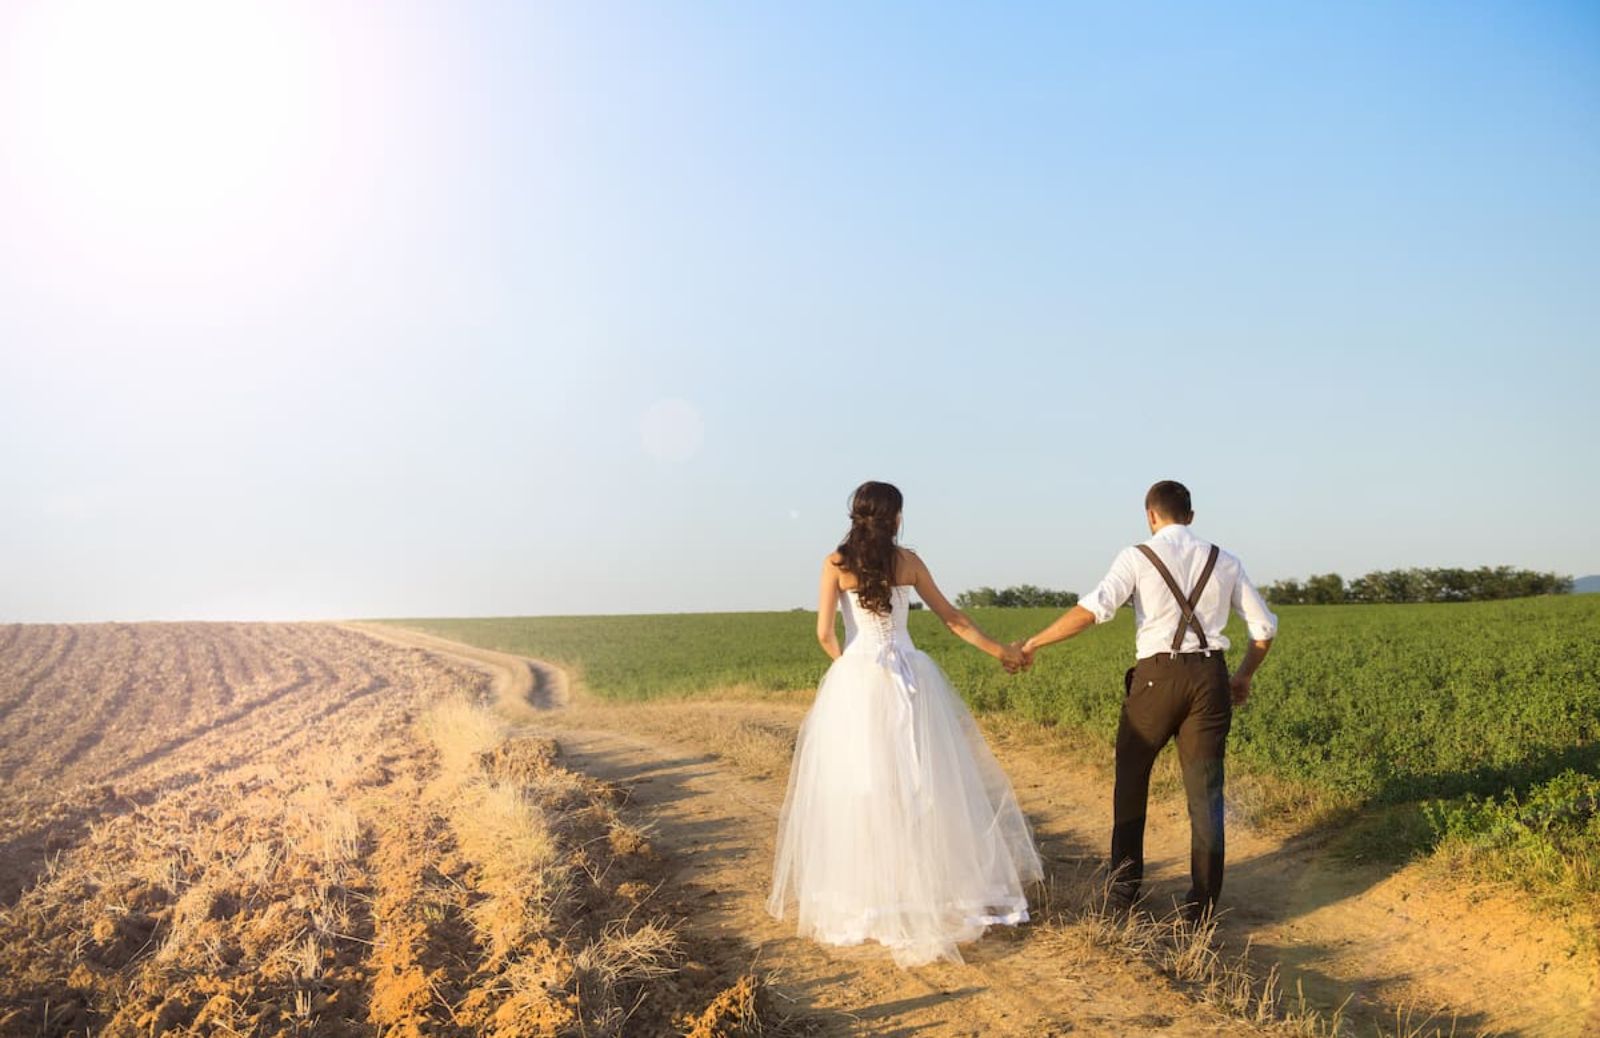 Organizzare il proprio matrimonio: idee low cost per risparmiare